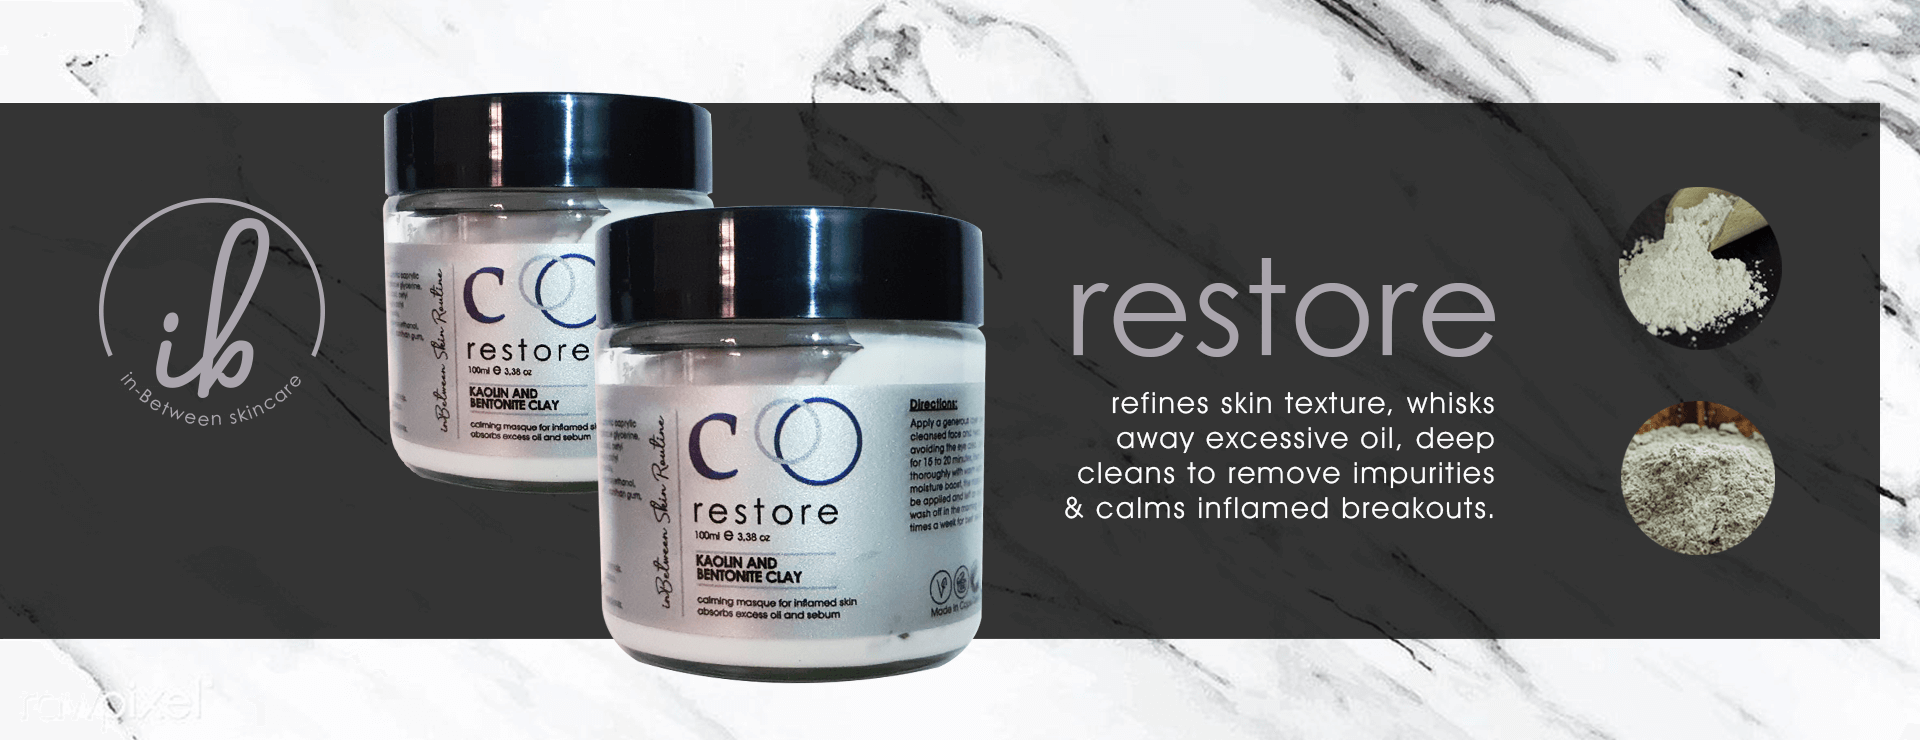 C: Restore